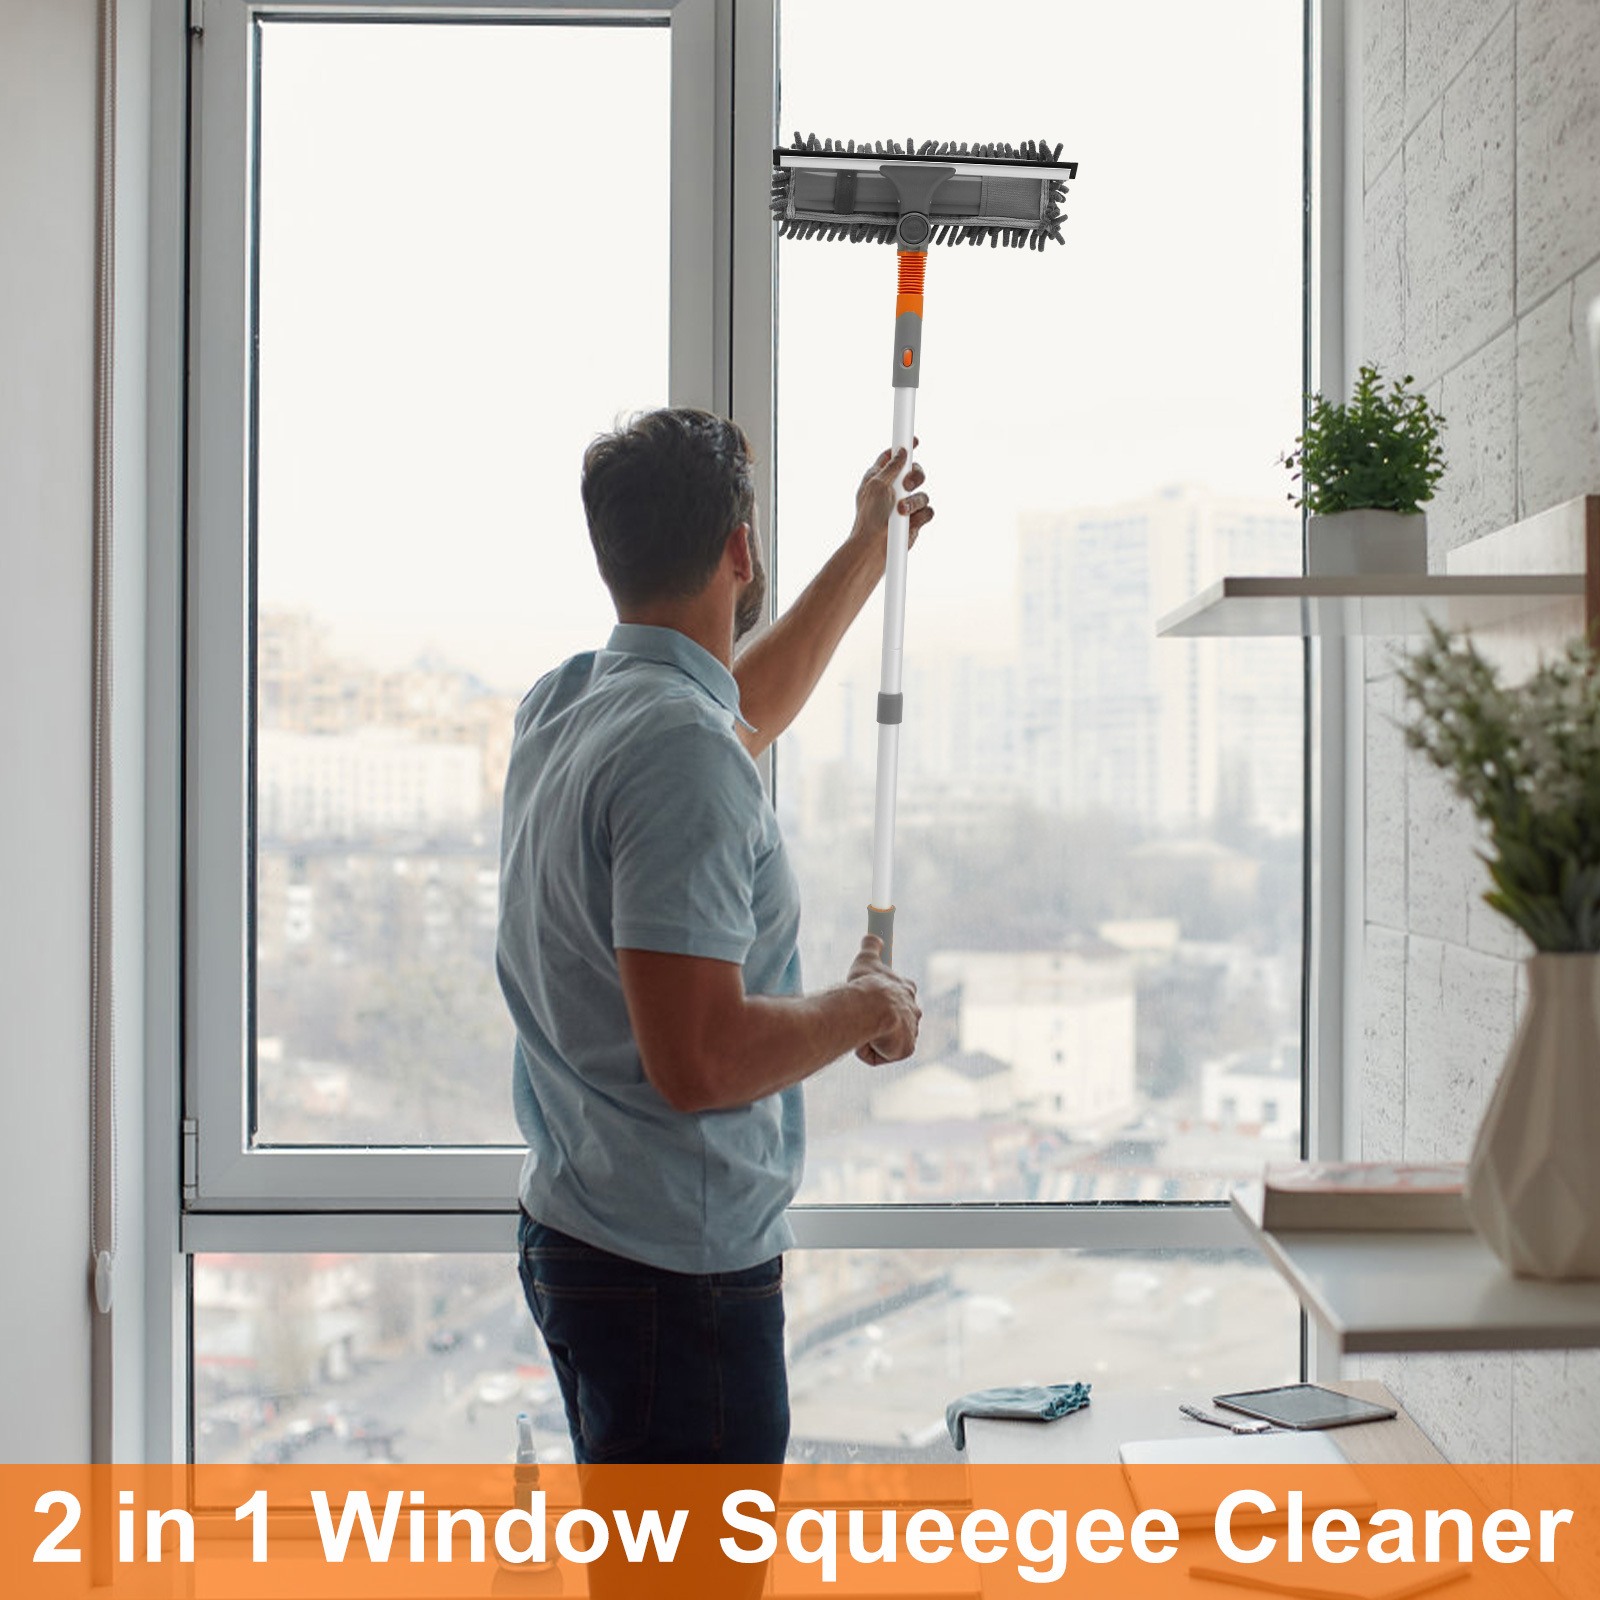 Limpieza de ventanas en altura: técnicas y herramientas